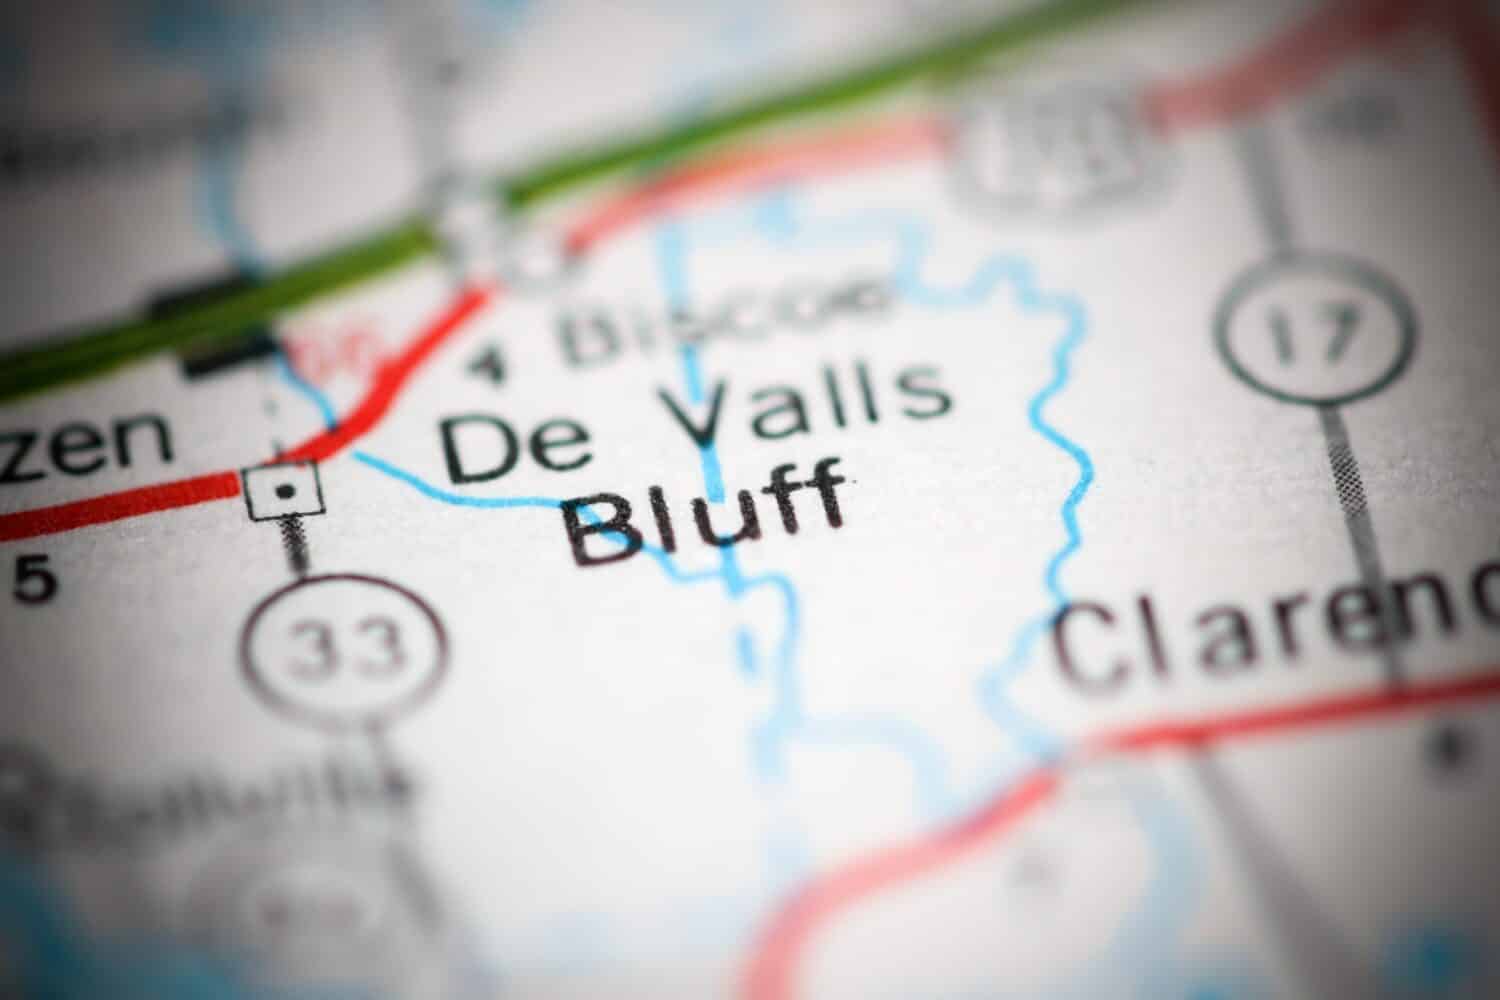 De Valls Bluff. Arkansas. USA on a geography map